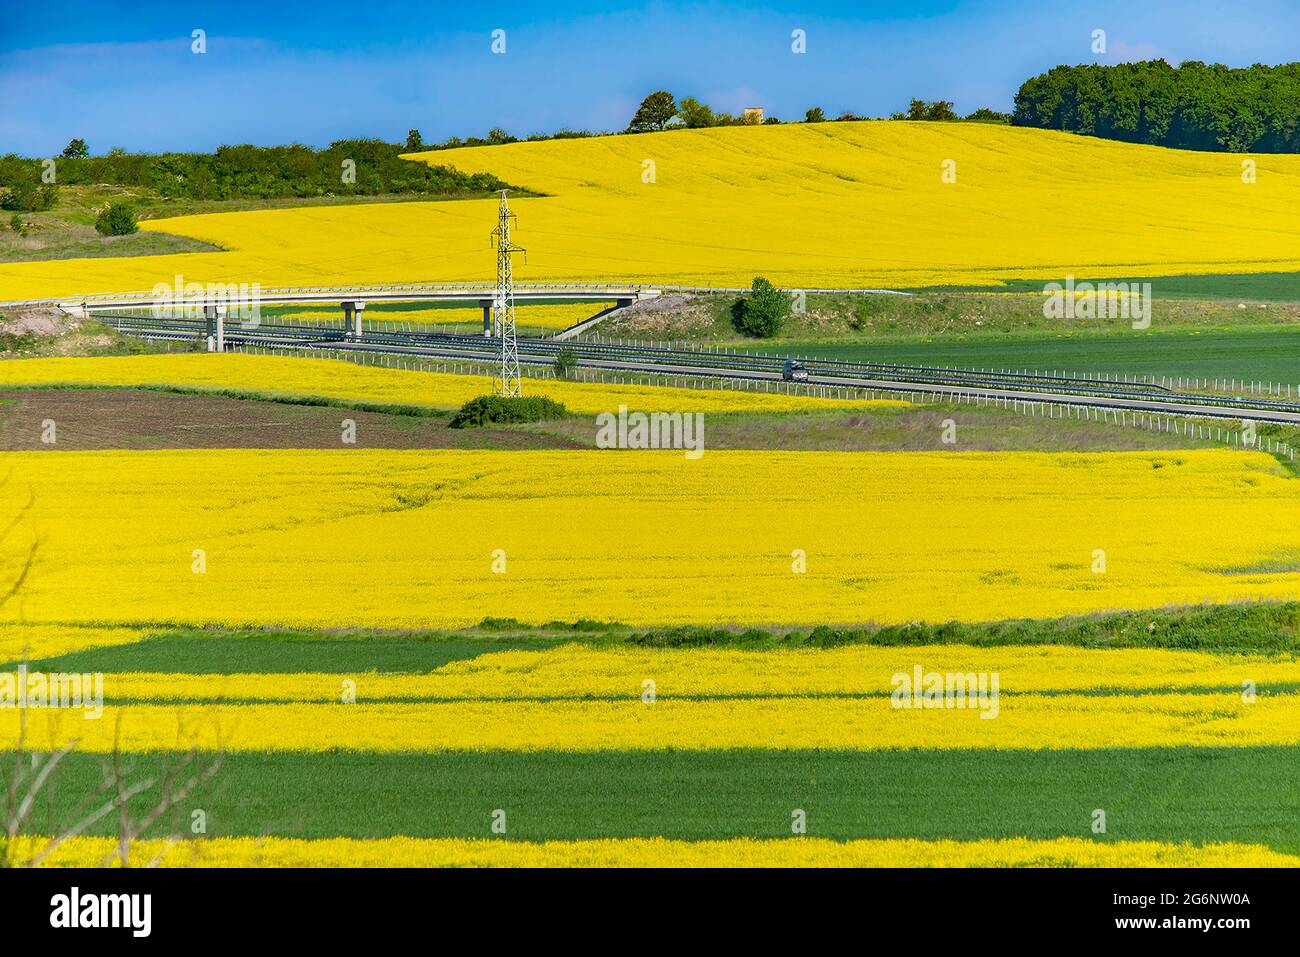 Multicolore agricoltura rurale primavera paesaggio terreno: Grano verde fioritura colza gialla Foto Stock